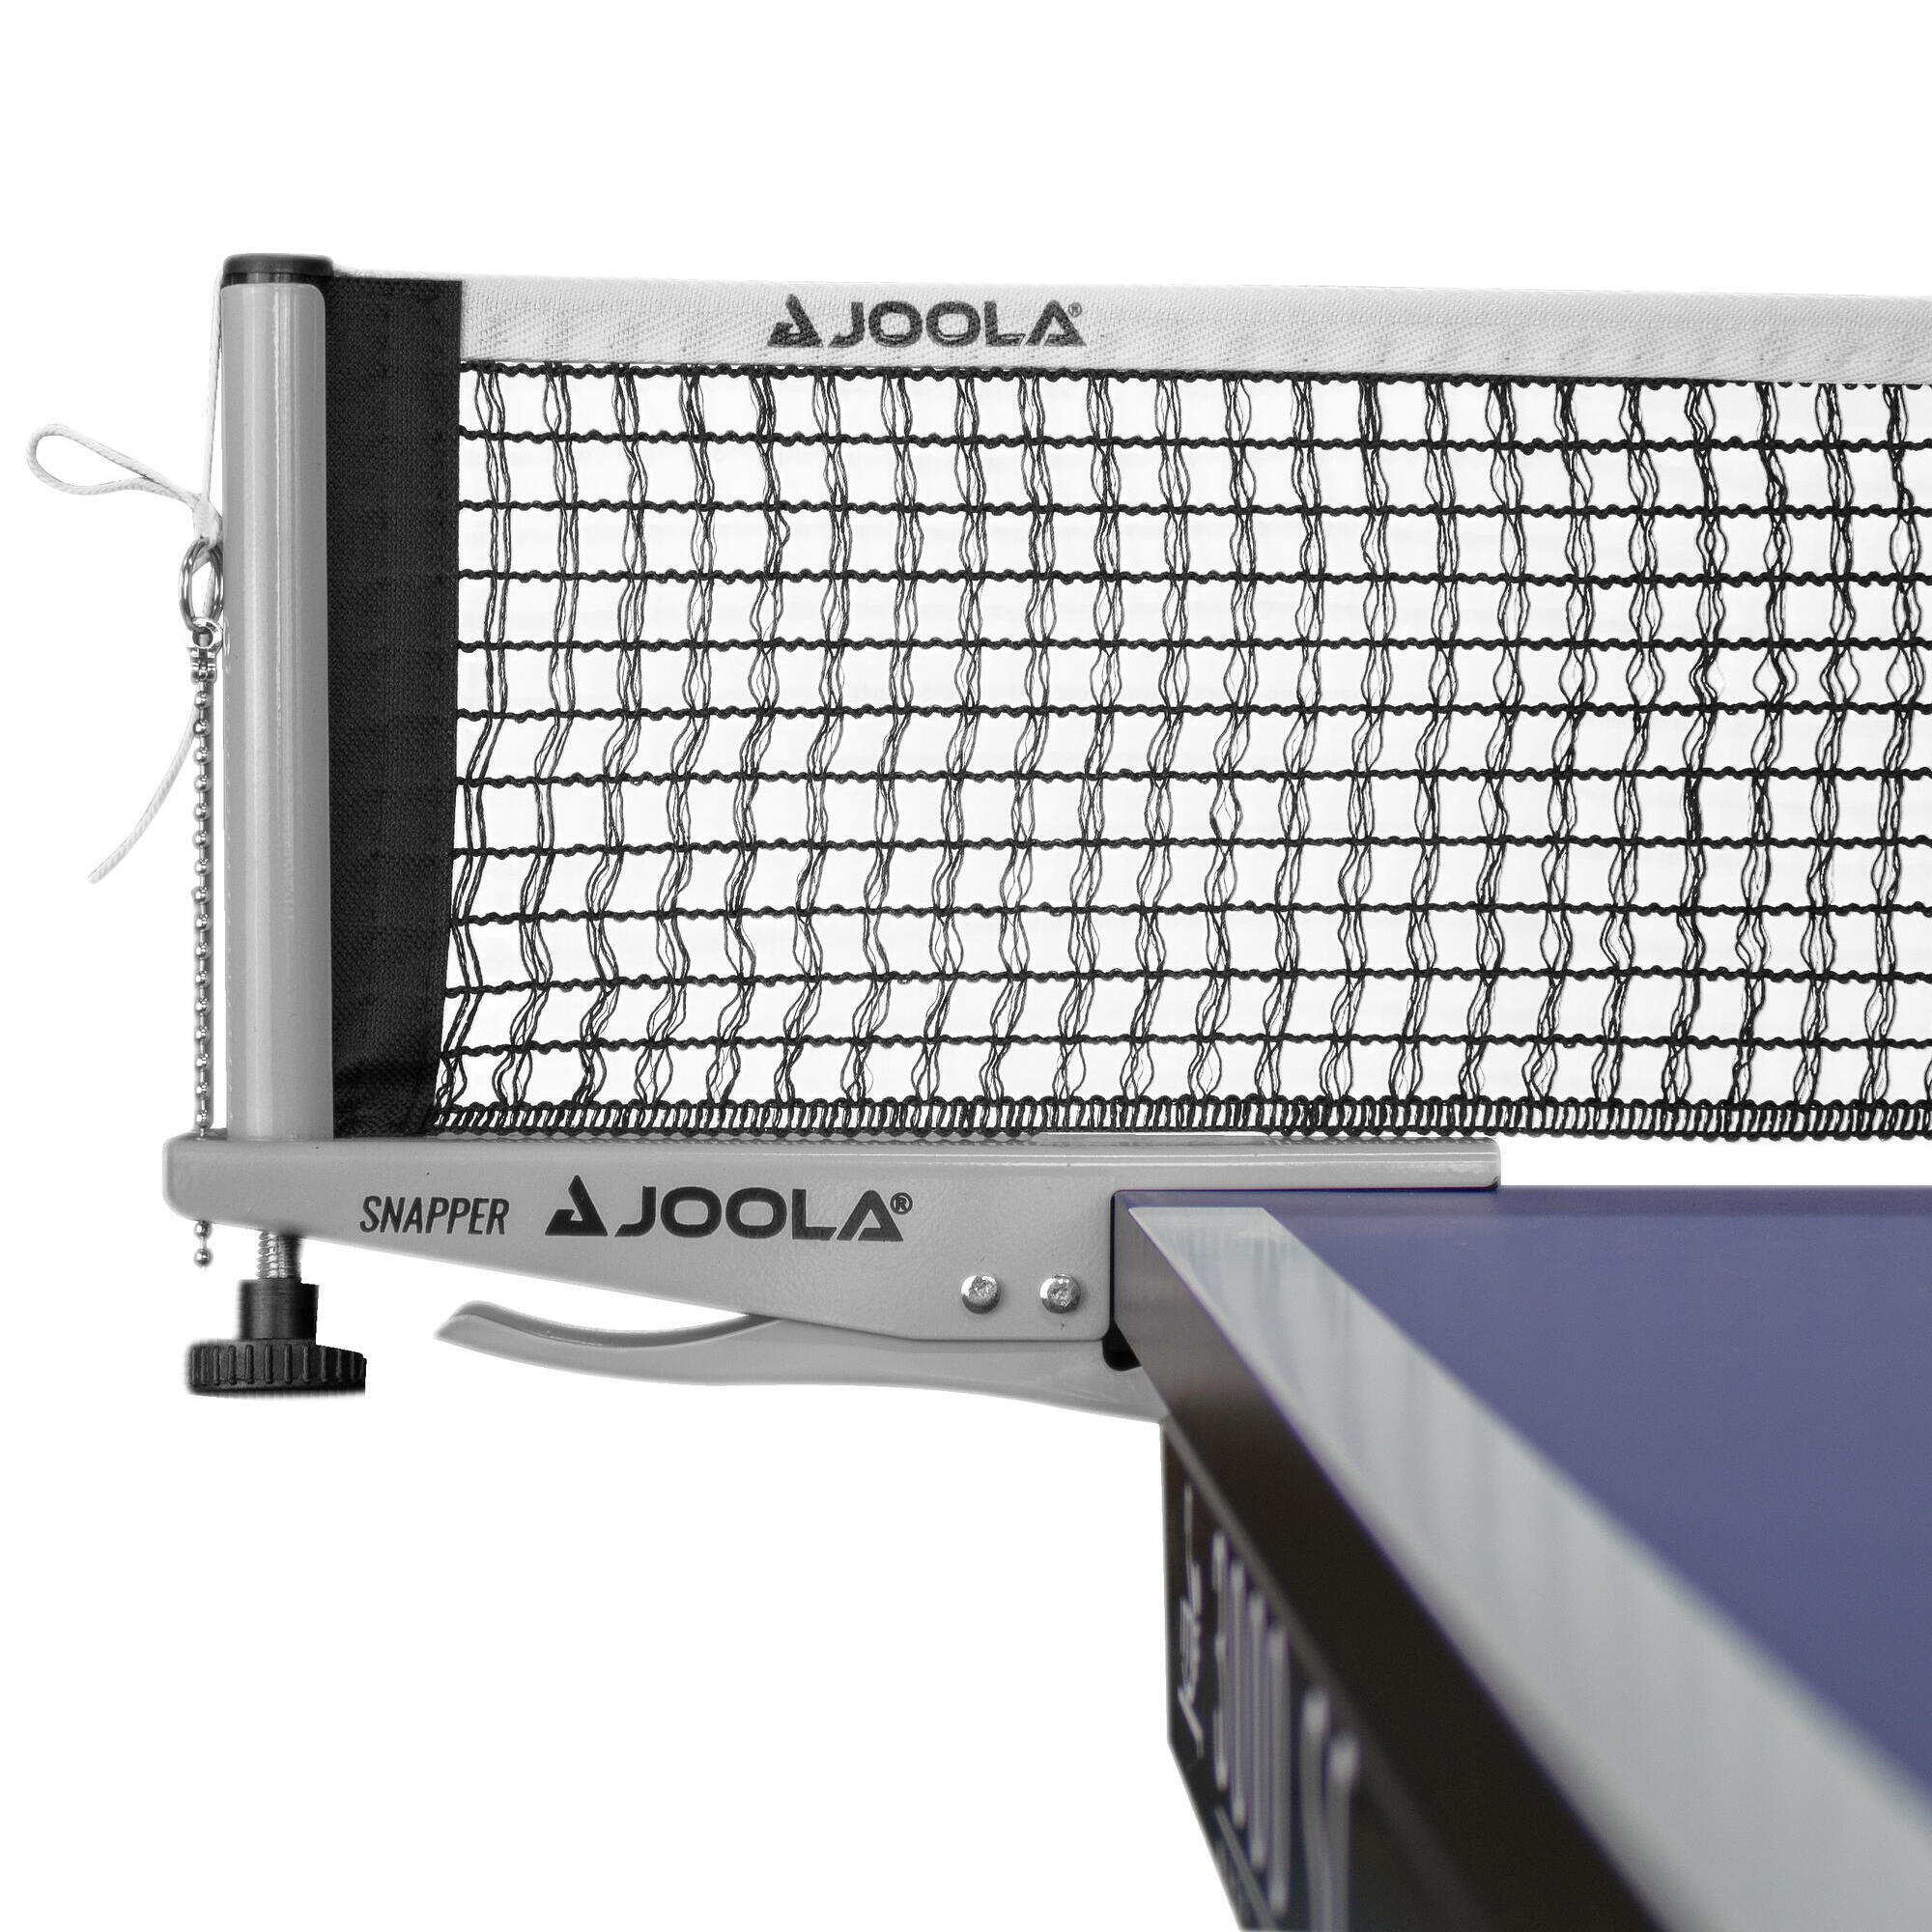 Набор сеток для настольного тенниса Joola Snapper, серый/серебристый/белый